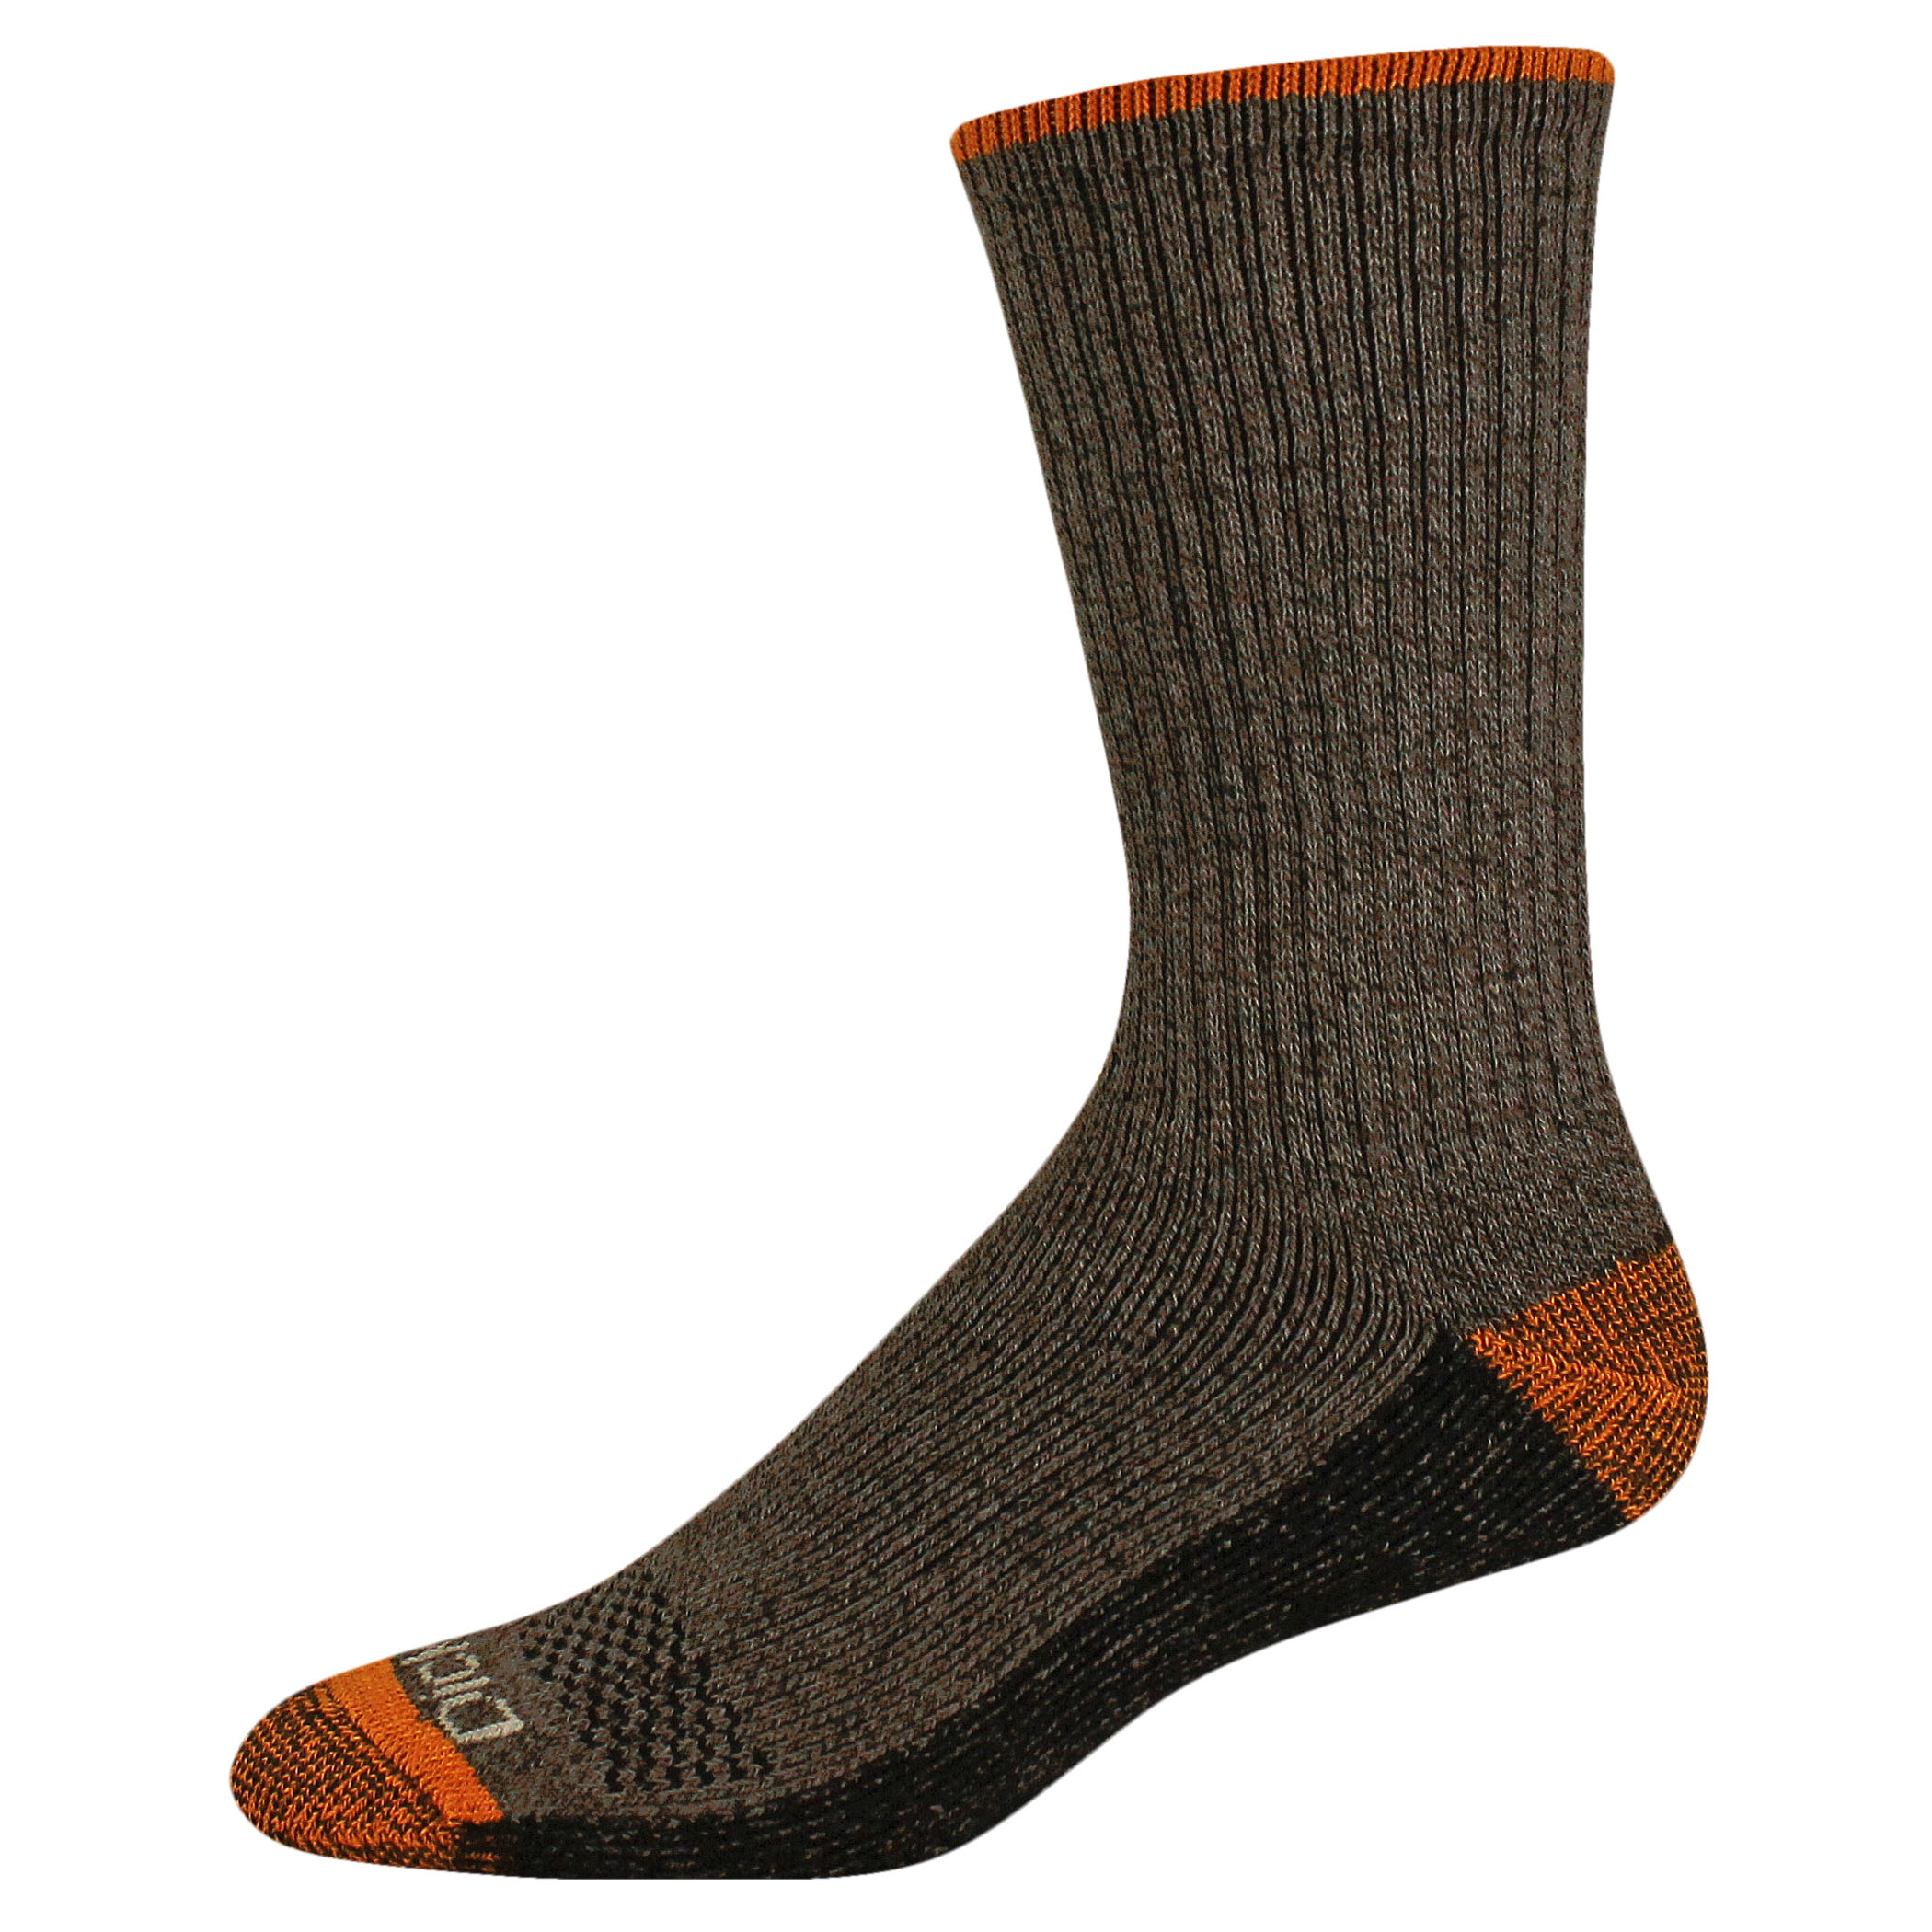 Genuine Dickies Men's Dri-Tech Crew Socks, 6-Pack - image 5 of 5